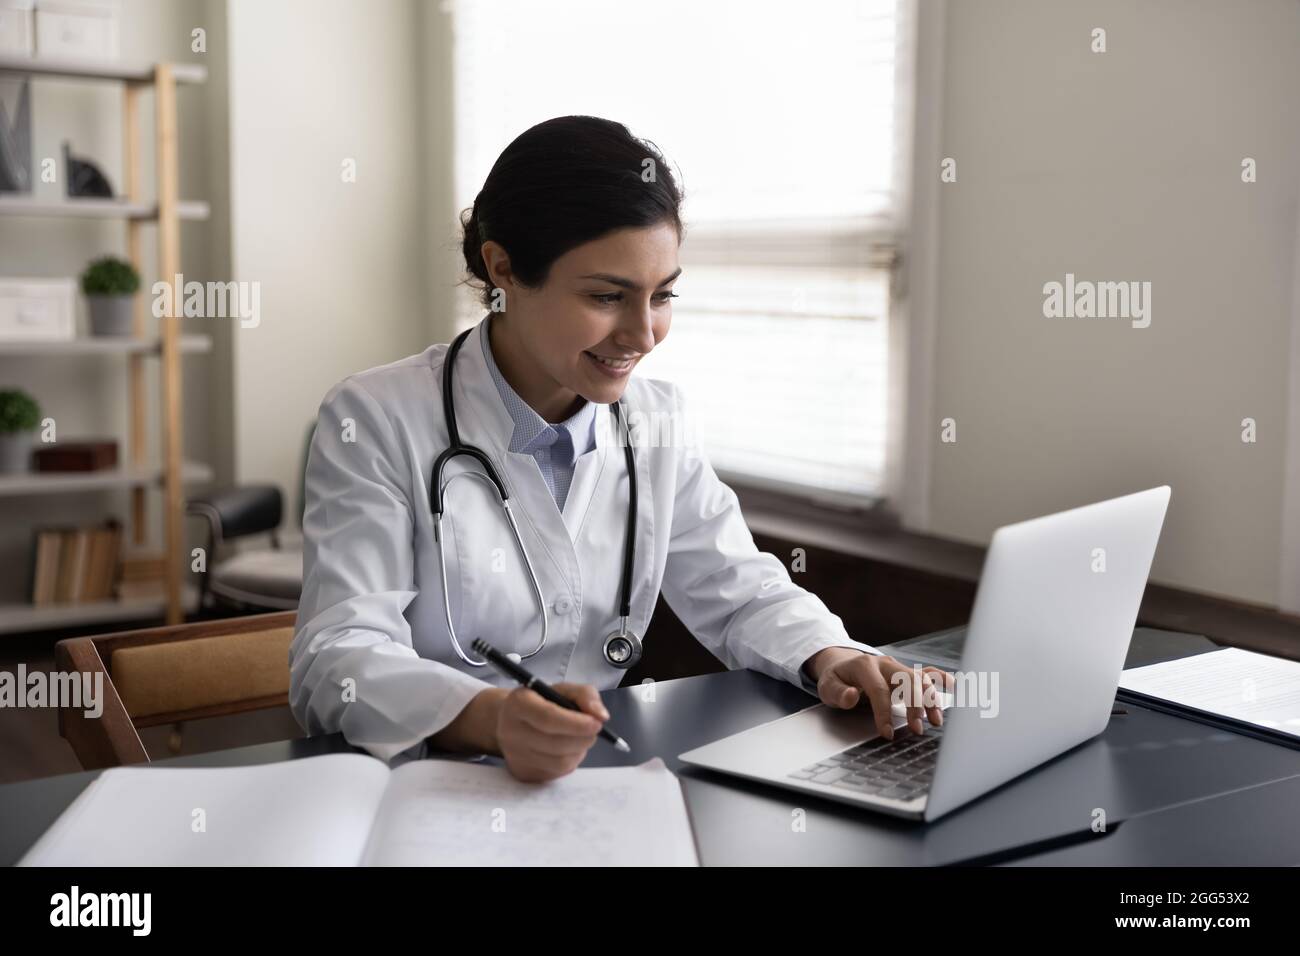 Glückliche junge indische Ärztin, die in einem modernen Klinikbüro arbeitet. Stockfoto